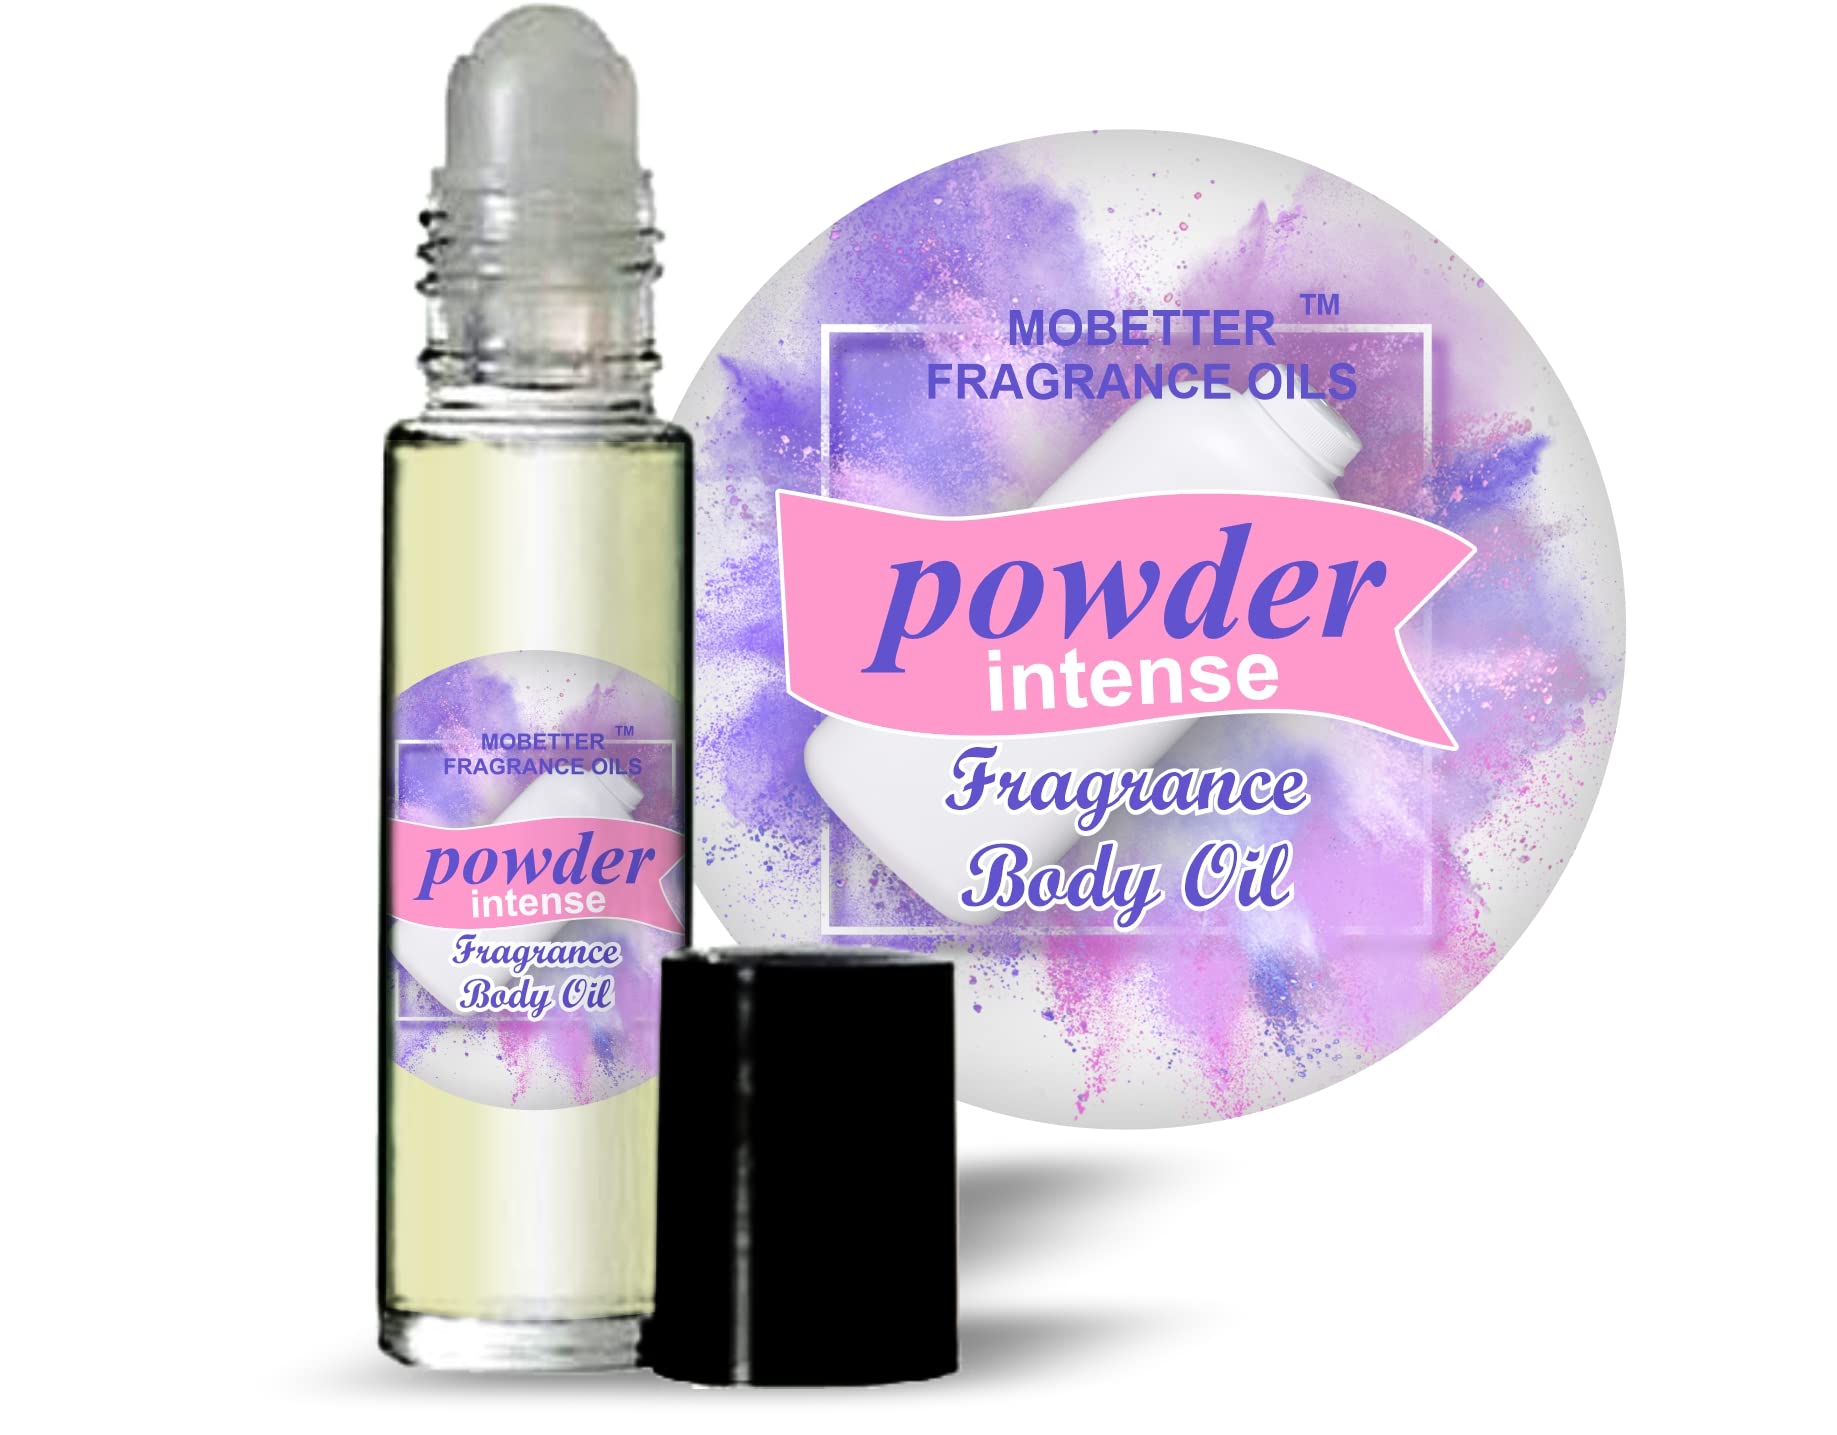 MOBETTER FRAGRANCE OILS Powder Intense fresh scent Perfume Fragrance Body Oil Unisex